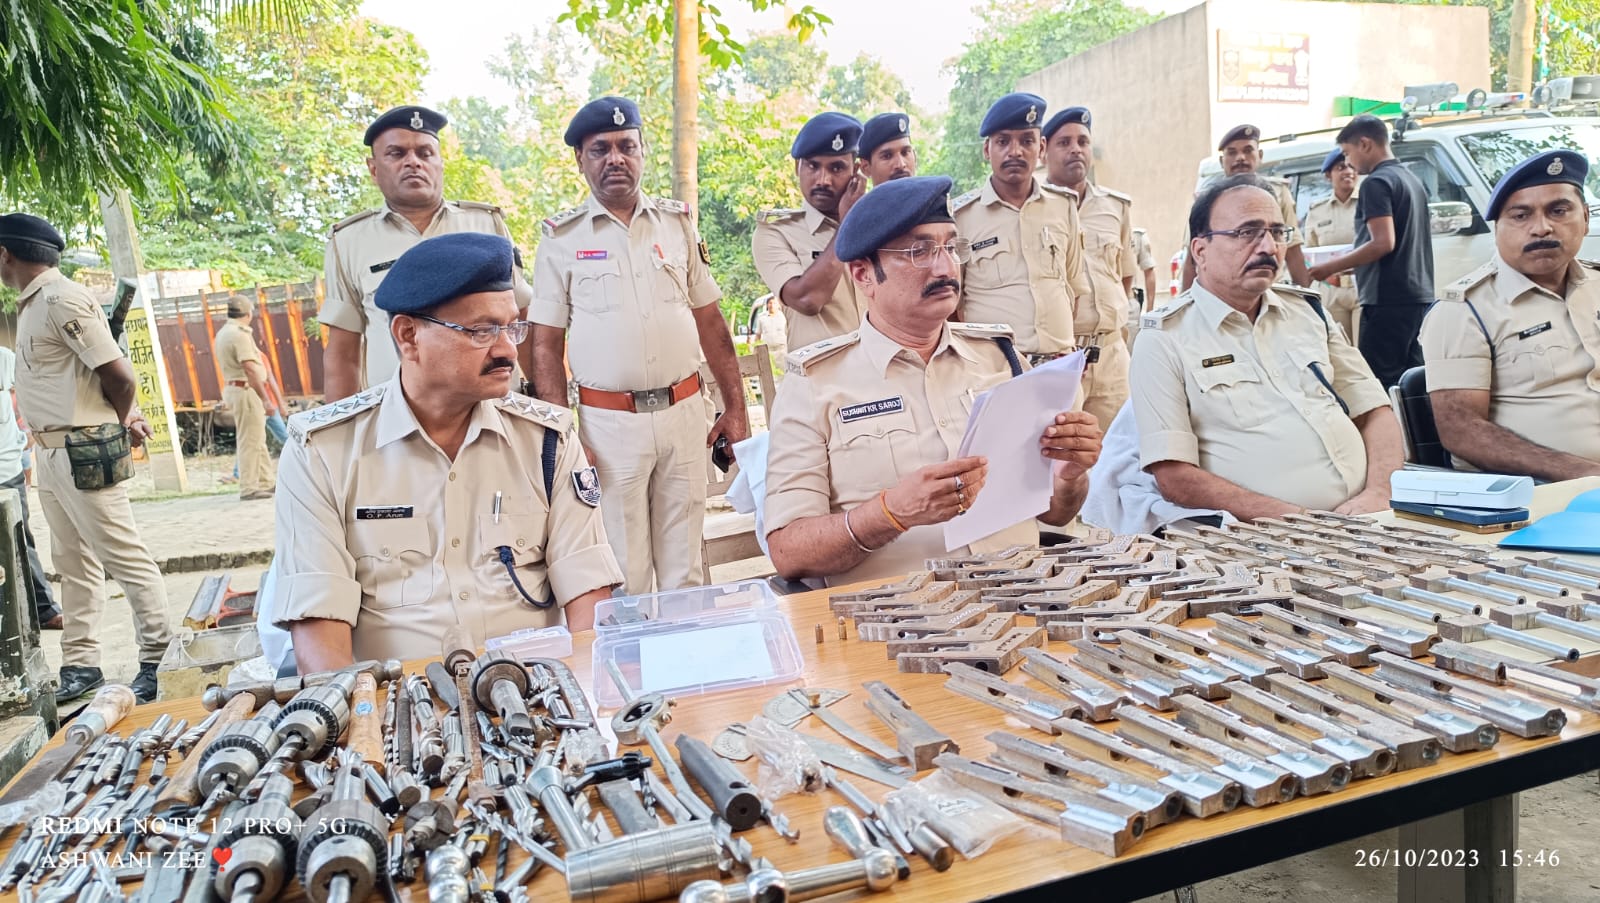 Mini gun factory busted in Bhagalpur